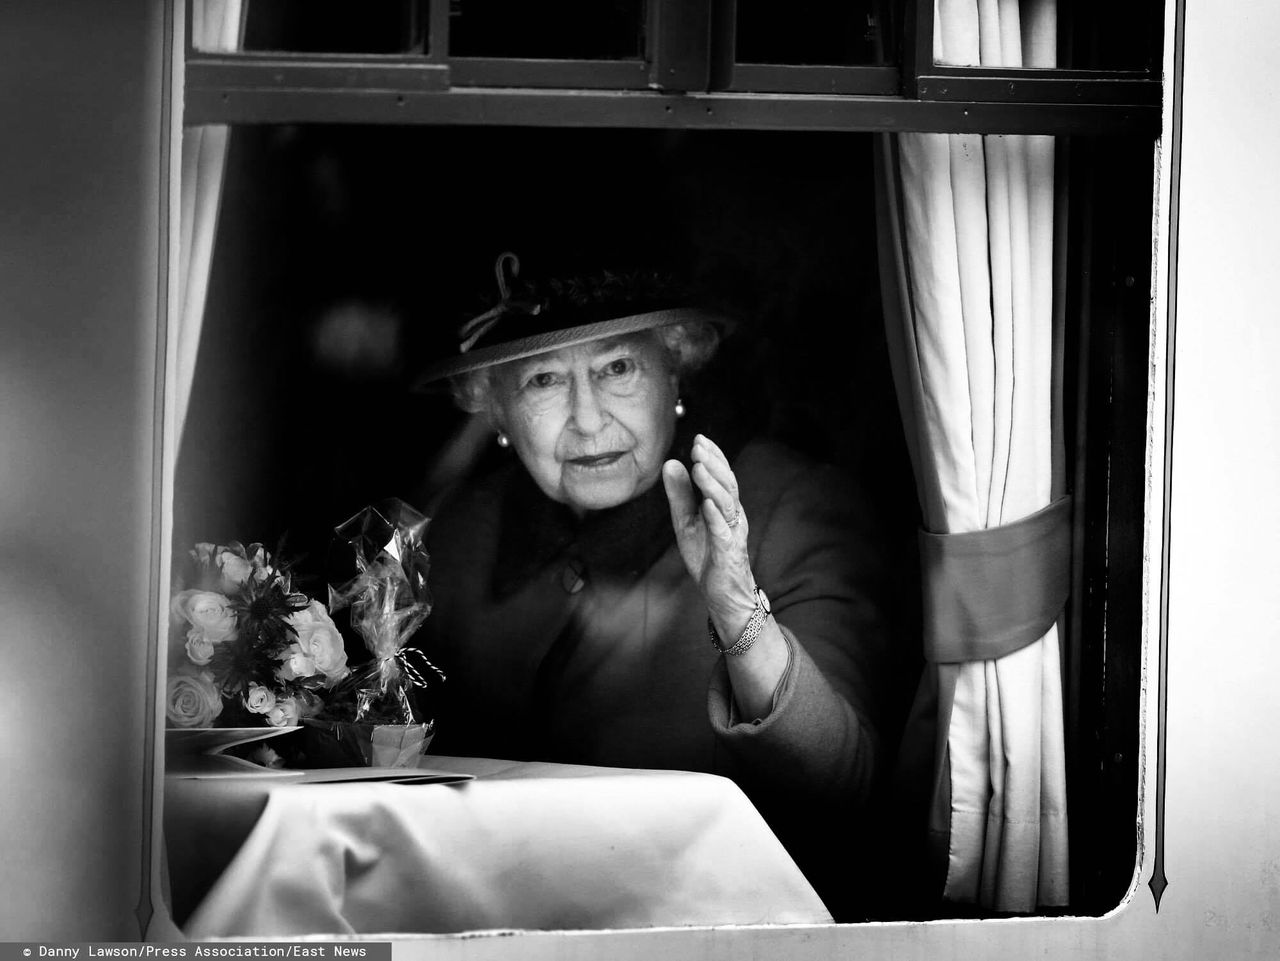 Pogrzeb królowej Elżbiety II. Kiedy i gdzie się odbędzie?